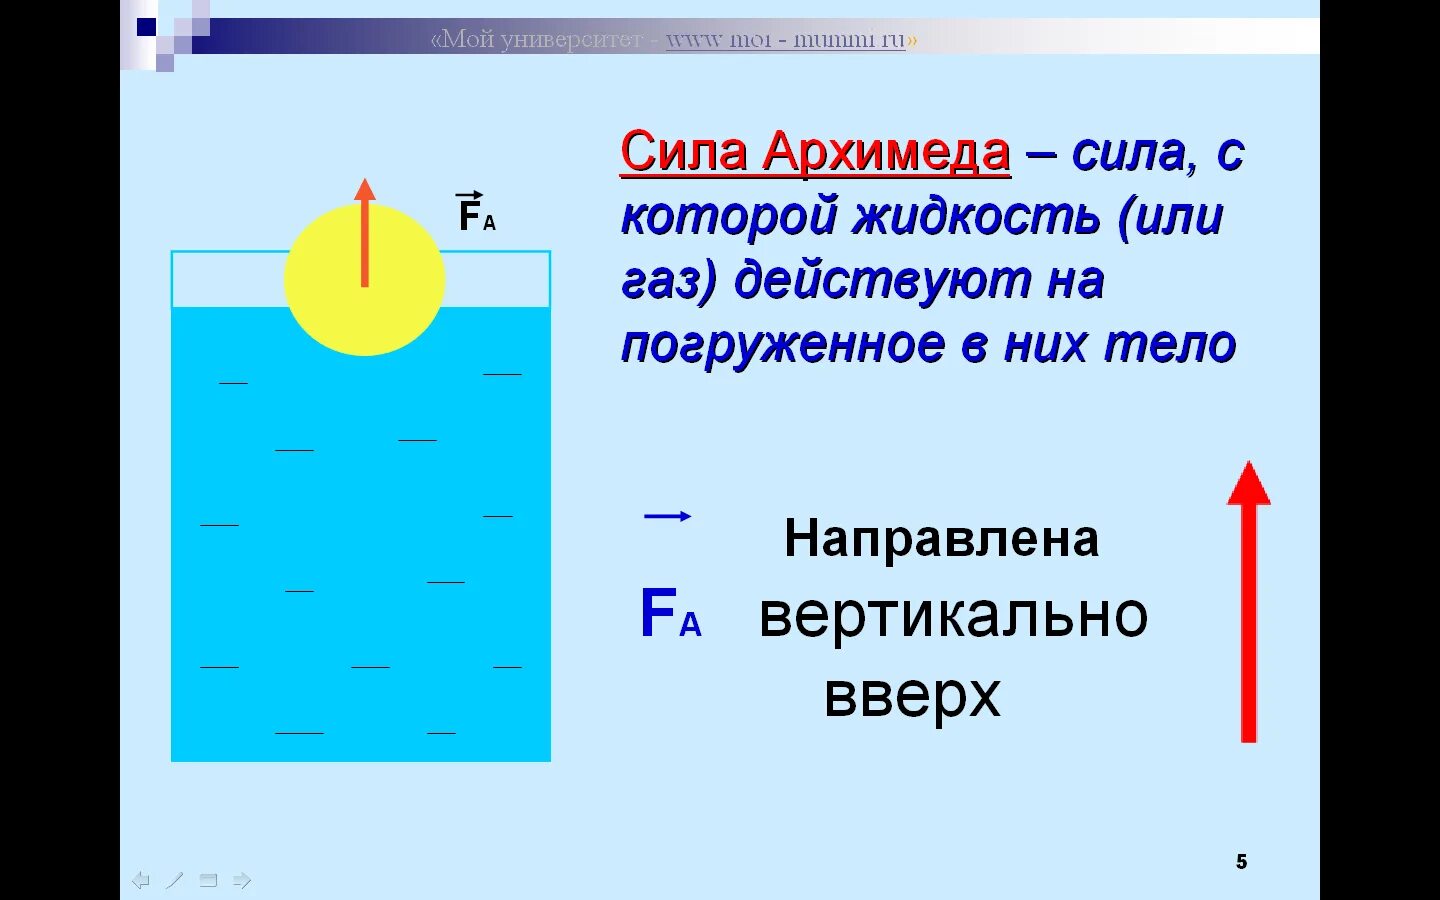 Презентация сила архимеда 7. Сила Архимеда 7 класс физика. Выталкивающая сила Архимеда. С ила АРХИМЕДАЕ. Куда направлена Архимедова сила.